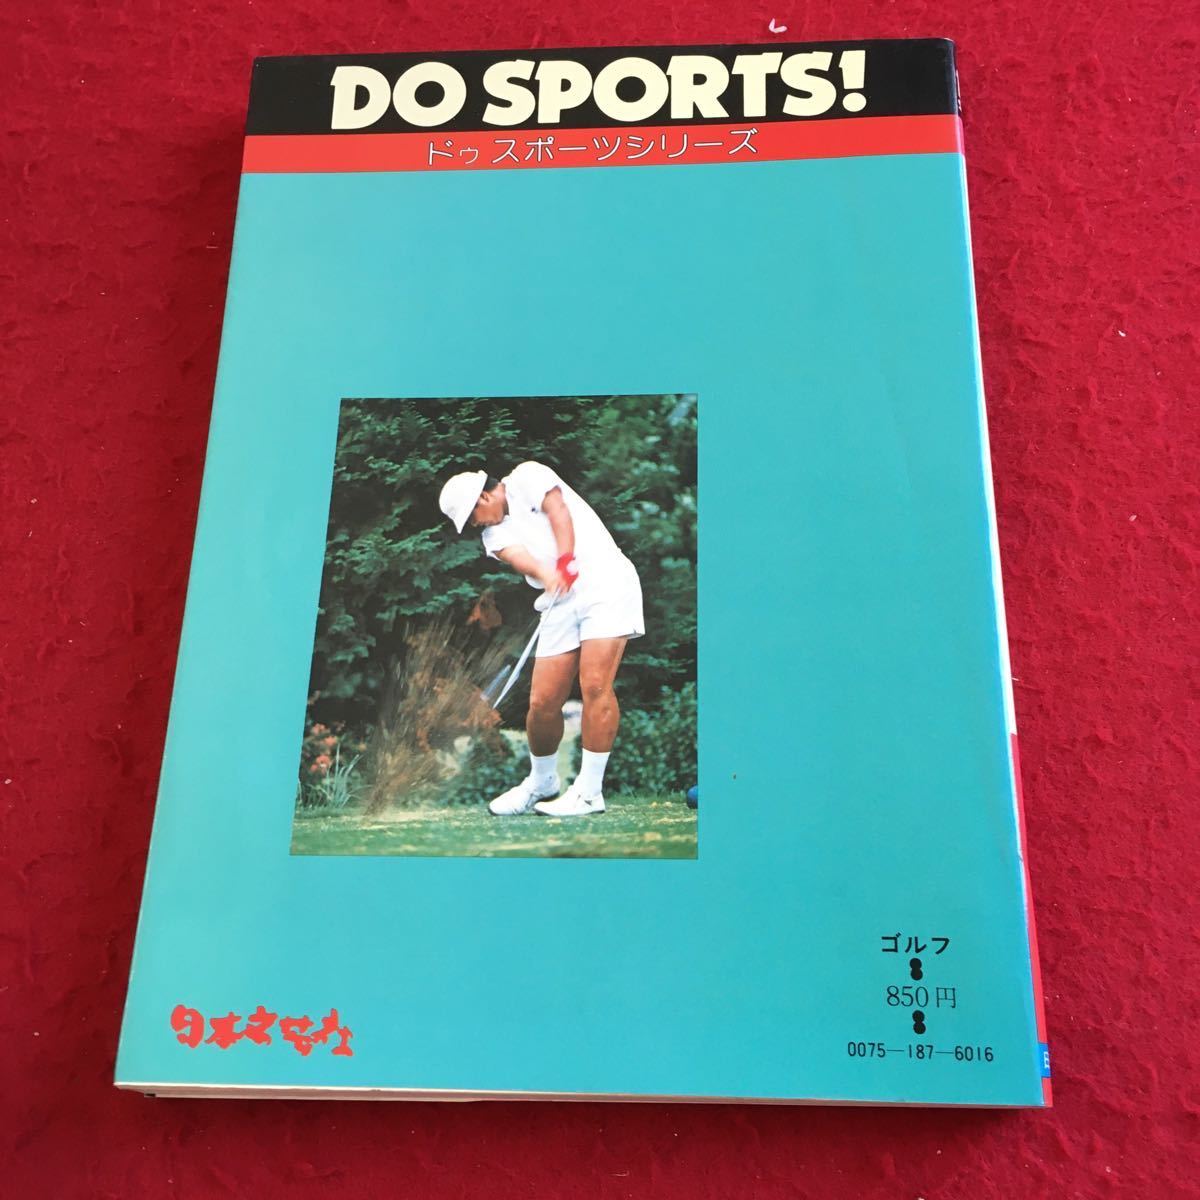 Y09-225 ドゥスポーツシリーズ ゴルフ 基礎の基礎 この一冊をマスターして自信をつけよう 杉本英世 日本文芸社 昭和54年発行 塗りつぶし有_傷、汚れ有り